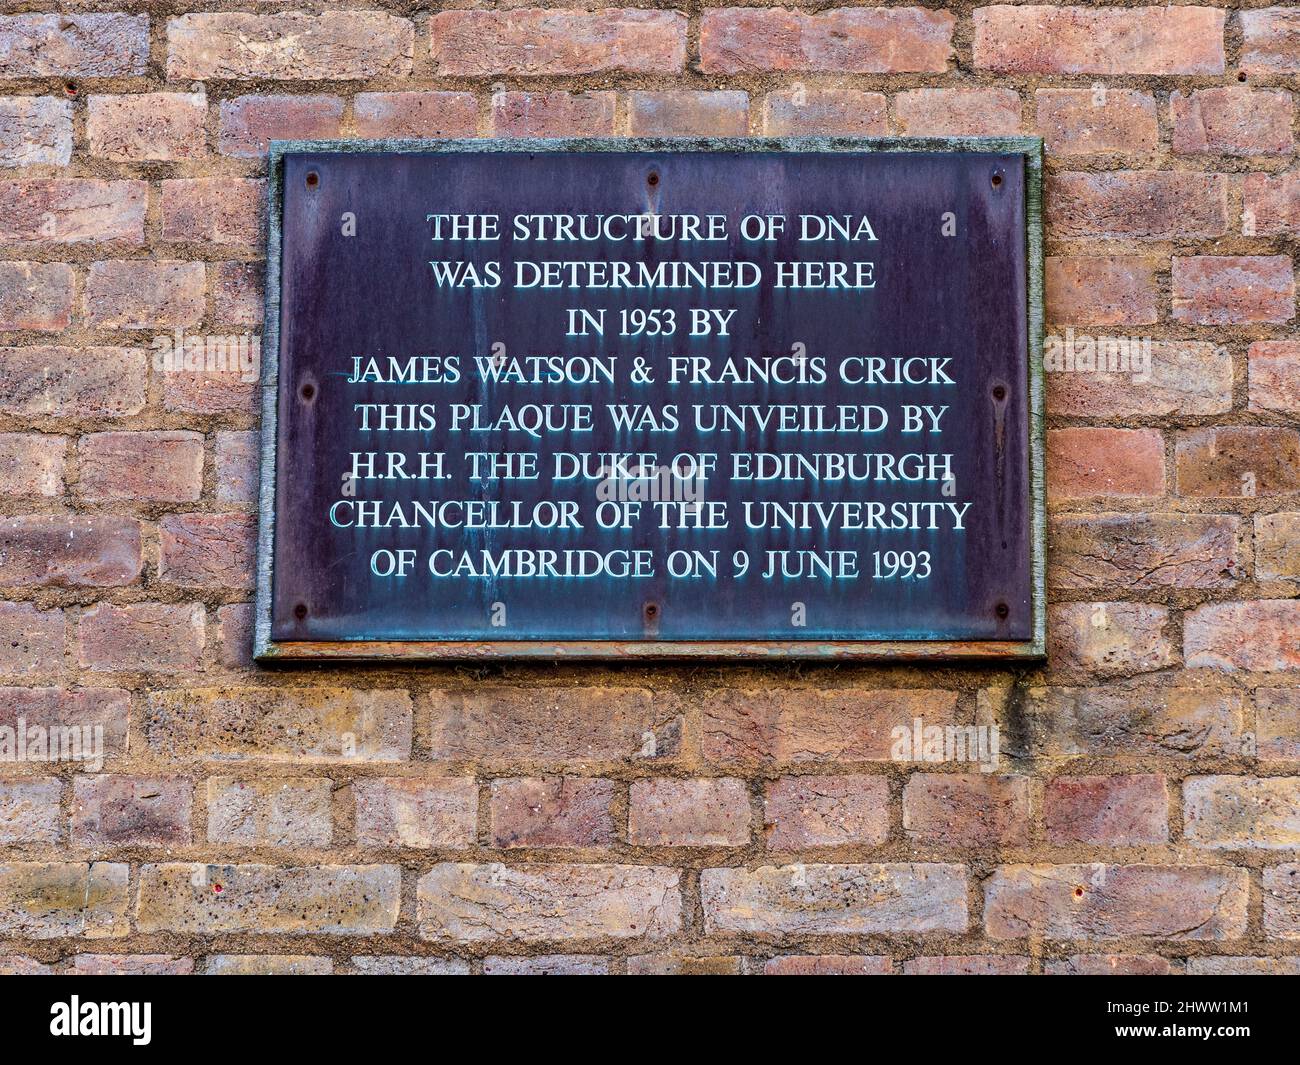 Structure de l'ADN, Cambridge - Plaque commémorant la découverte de la structure de l'ADN à l'ancien laboratoire Cavendish de l'Université de Cambridge. Banque D'Images